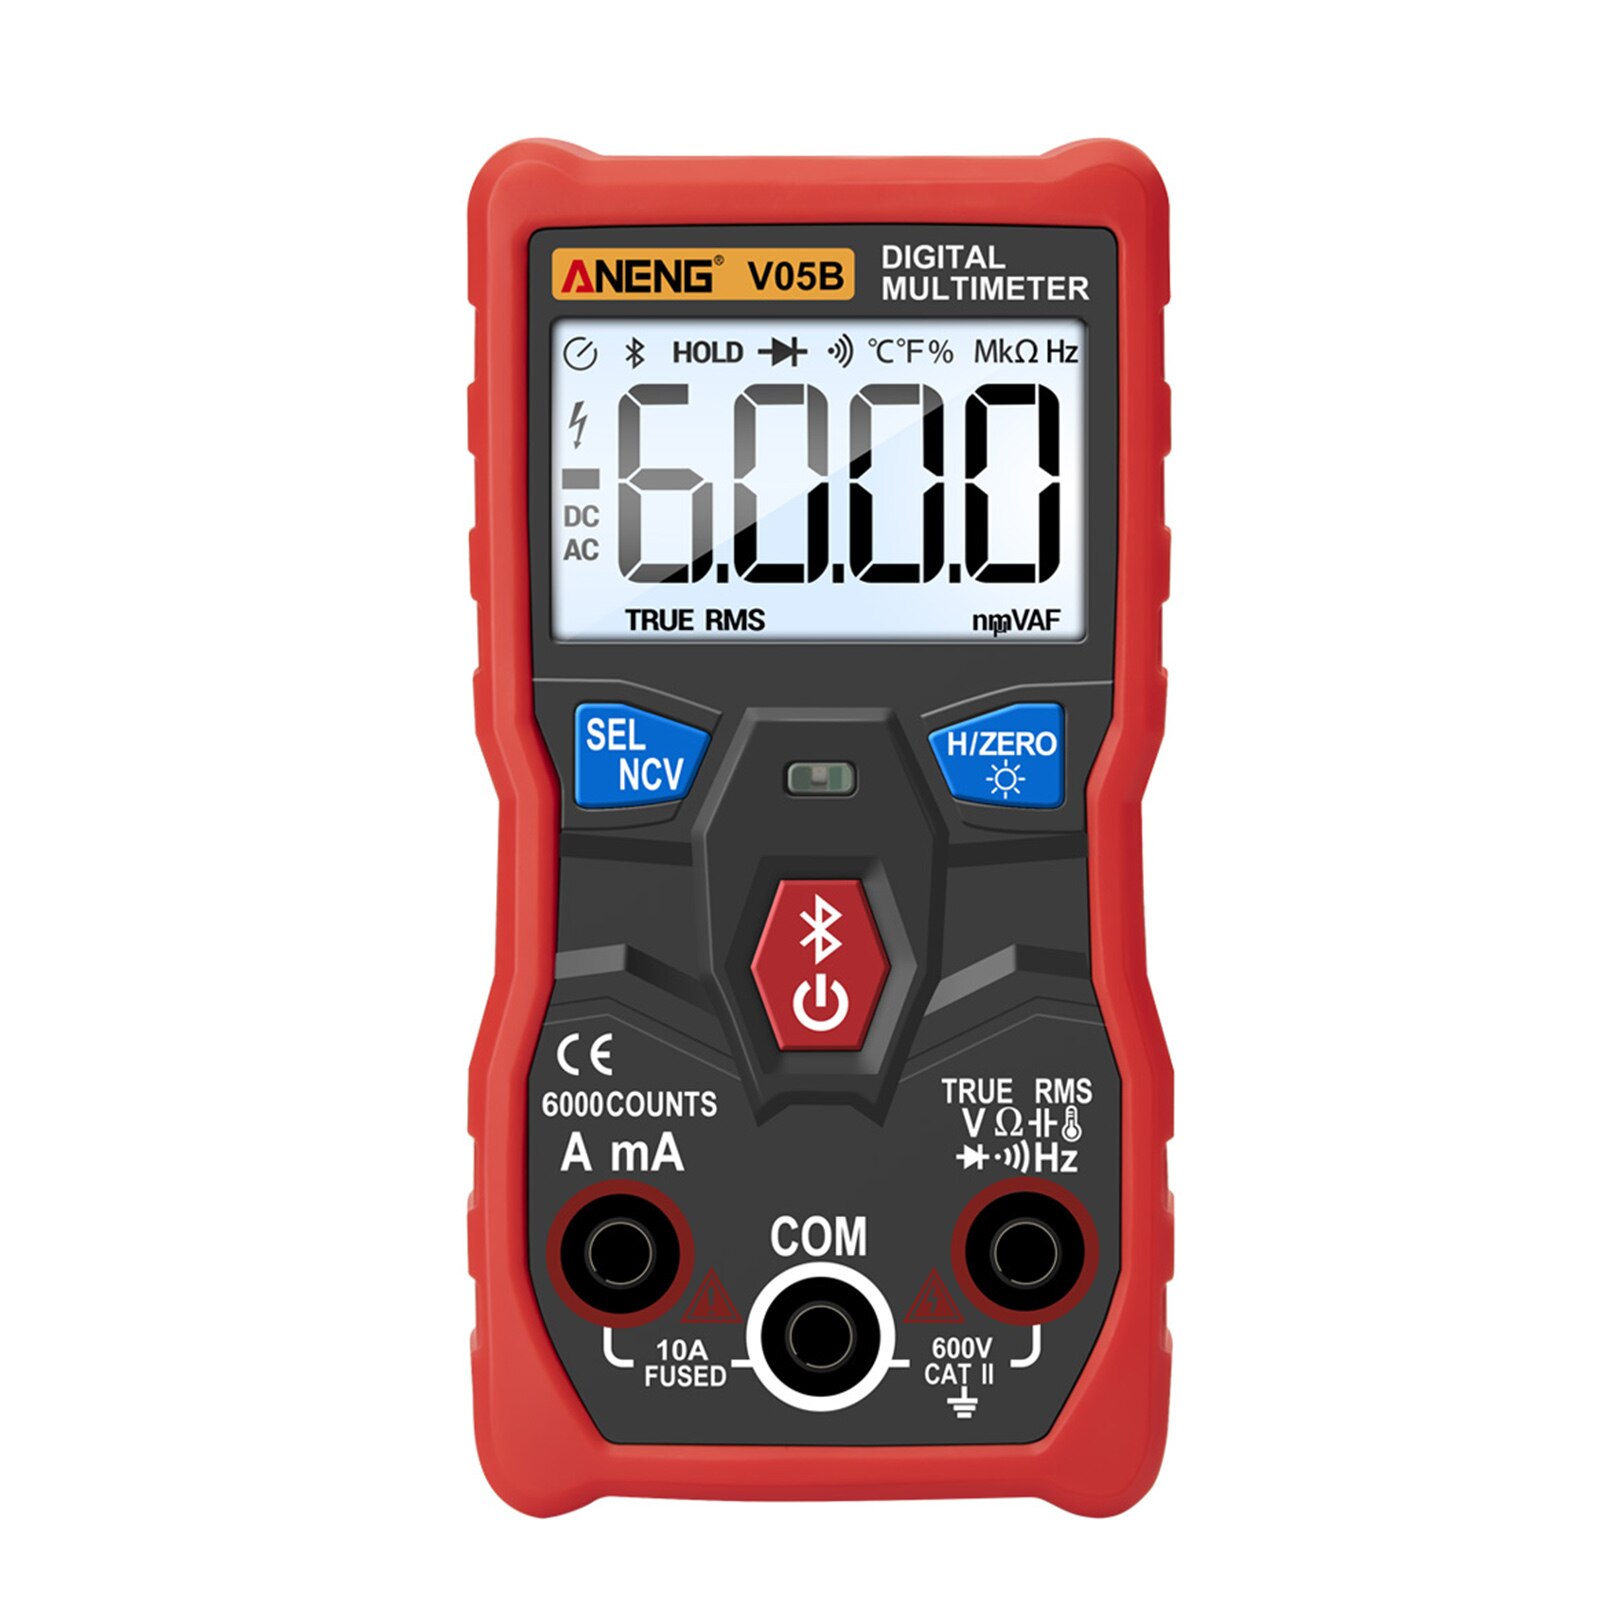 Digital multimeter elektriske instrumenter analyse app kontrol bluetooth trådløs måling håndholdt tester kapacitans abs